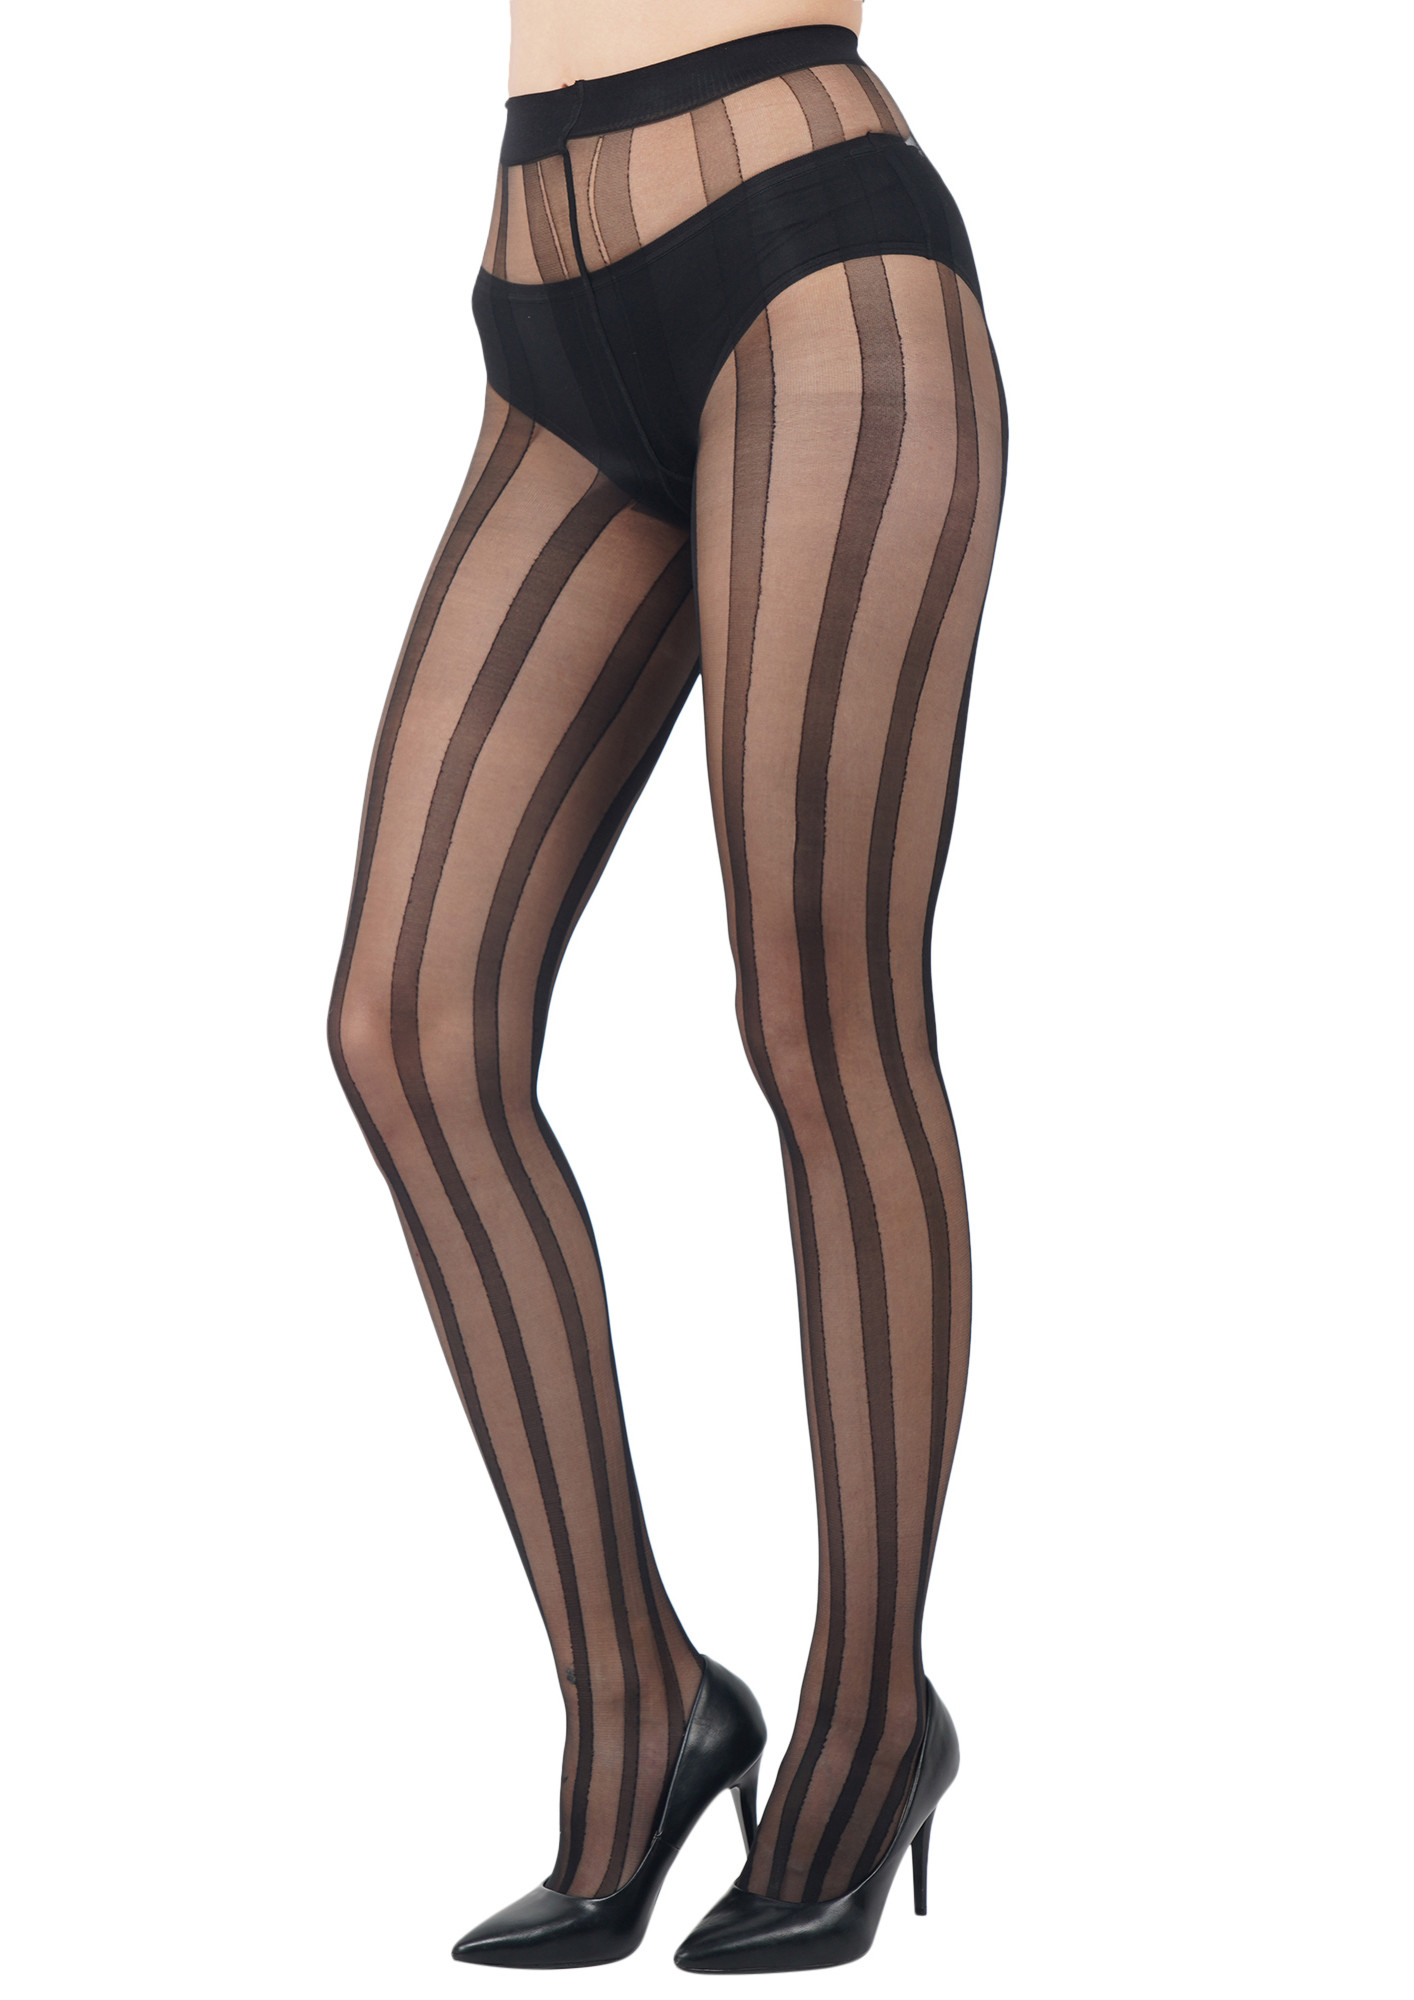 N2S NEXT2SKIN Women's Nylon Sheer Transparent Pantyhose Stocking (N2S_203, Black_8)